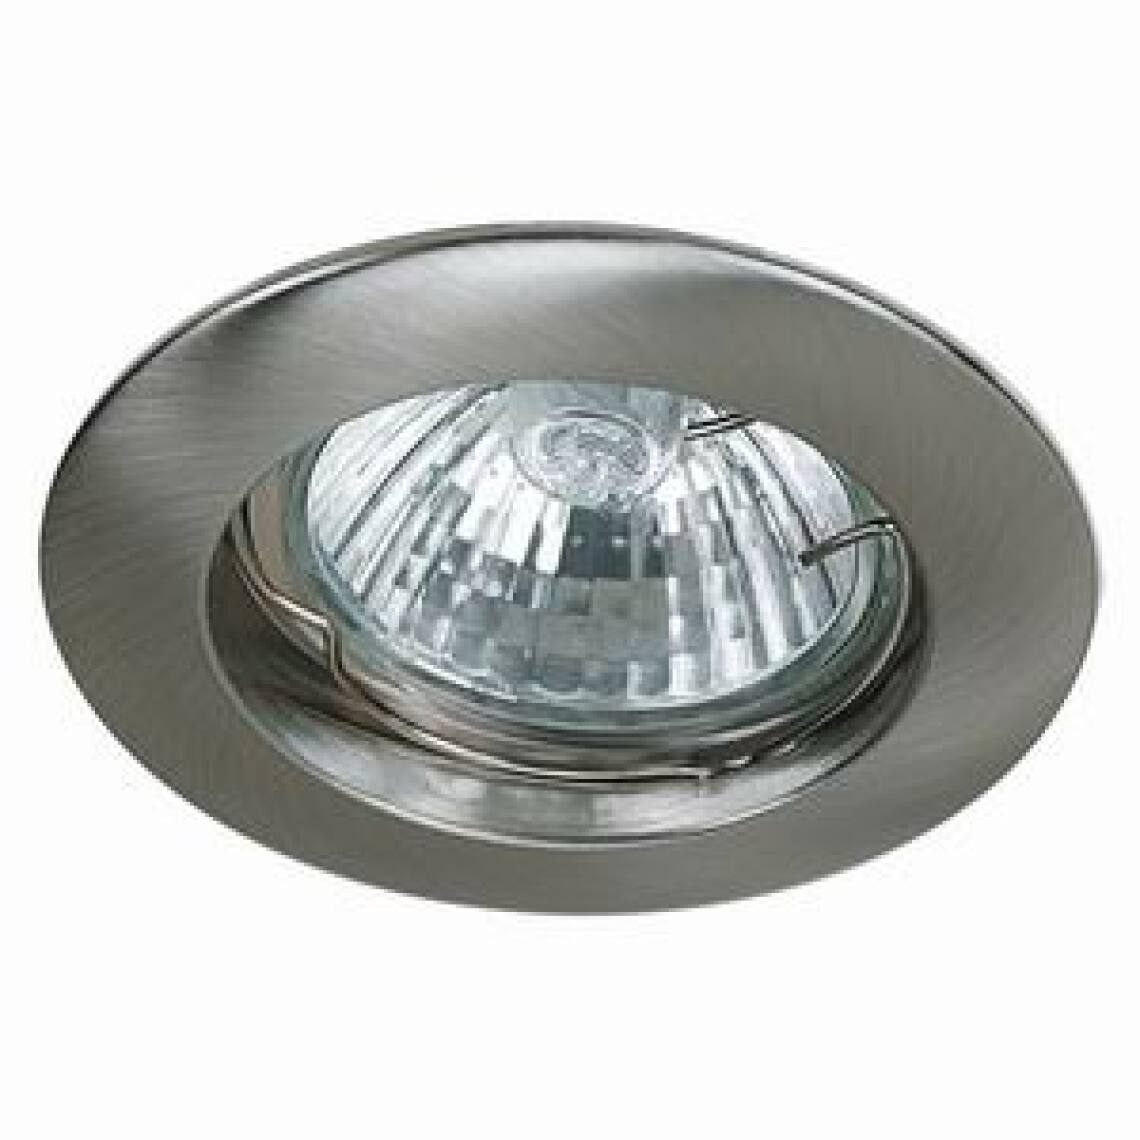 Lampesecoenergie - Spot Encastrable Fixe Nickel Satiné pour ampoule GU10 Halogène / LED - Max 50W - Fourni avec ampoule LED GU10 5W et douille - Moulures et goulottes